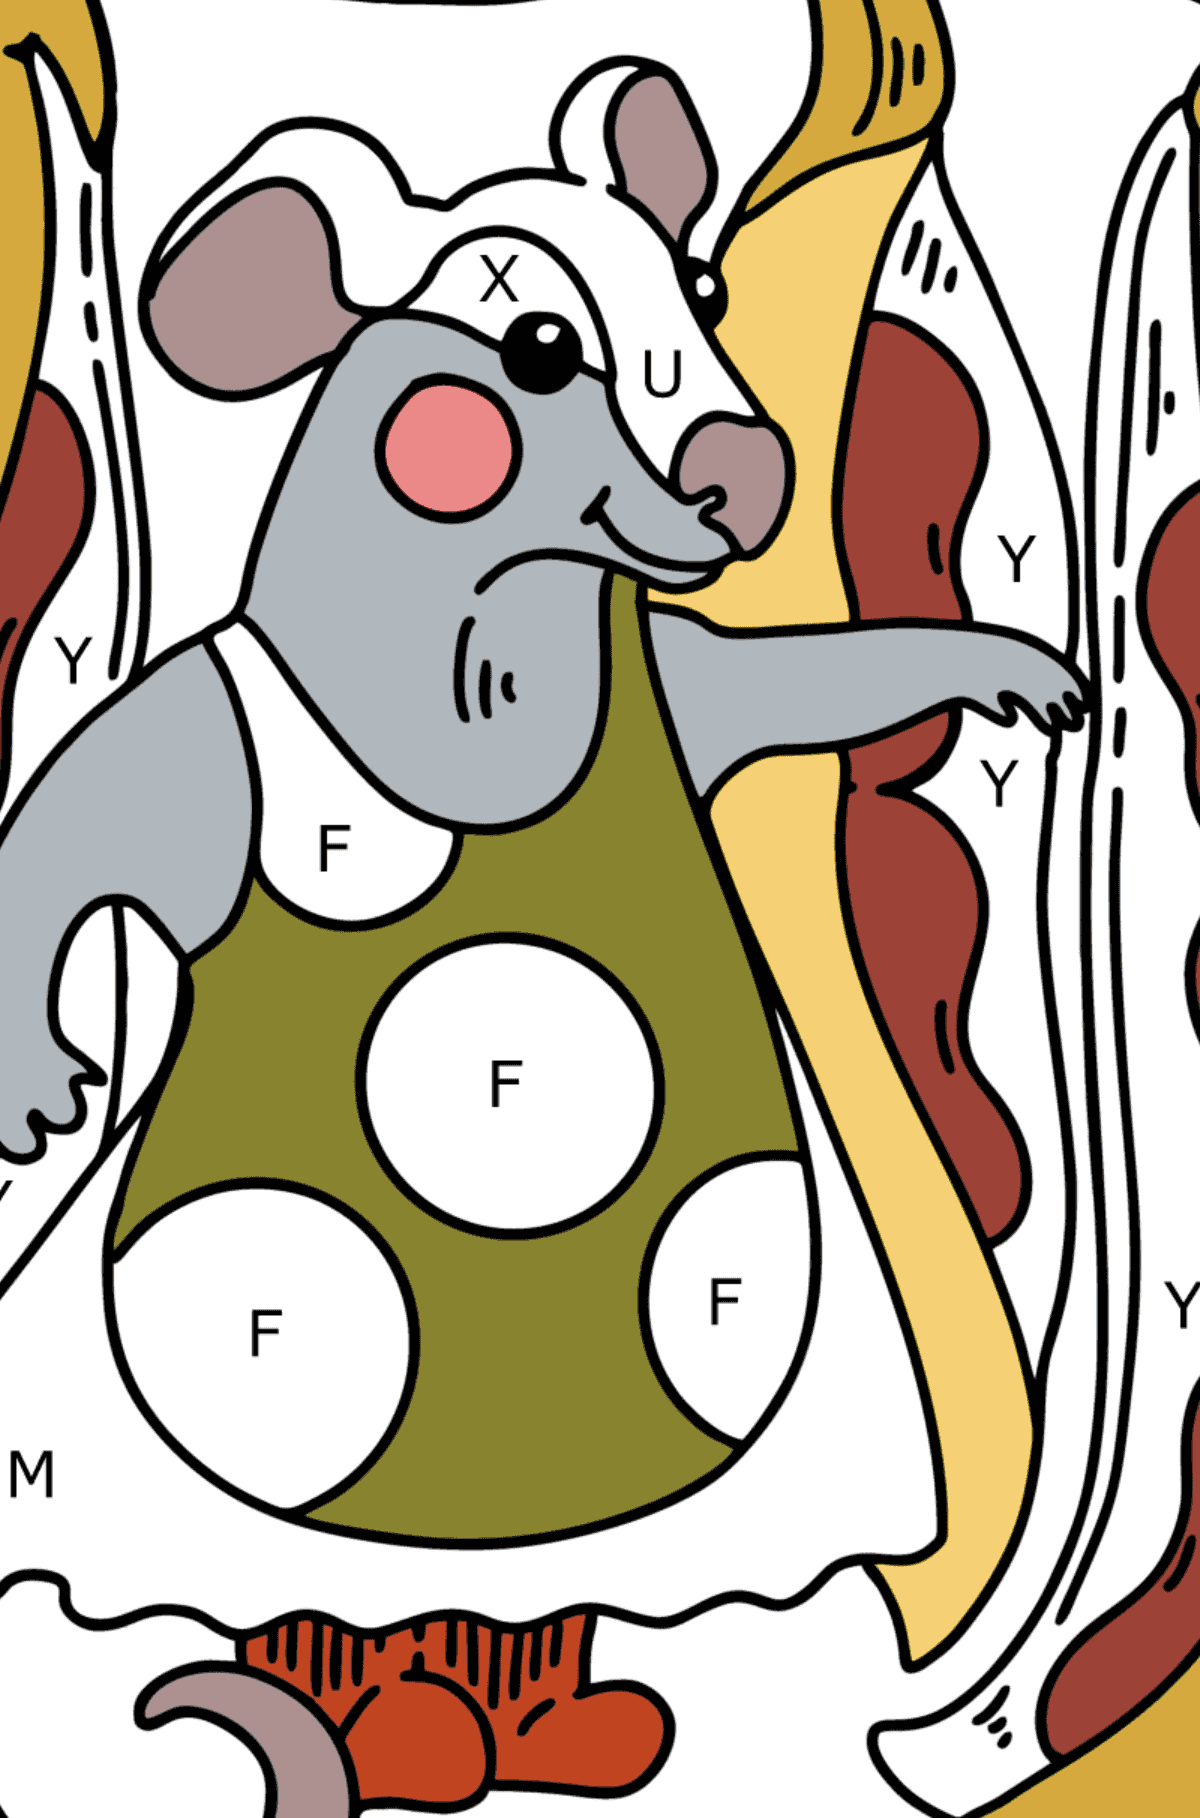 Dibujo para colorear - Ratón lindo - Colorear por Letras para Niños